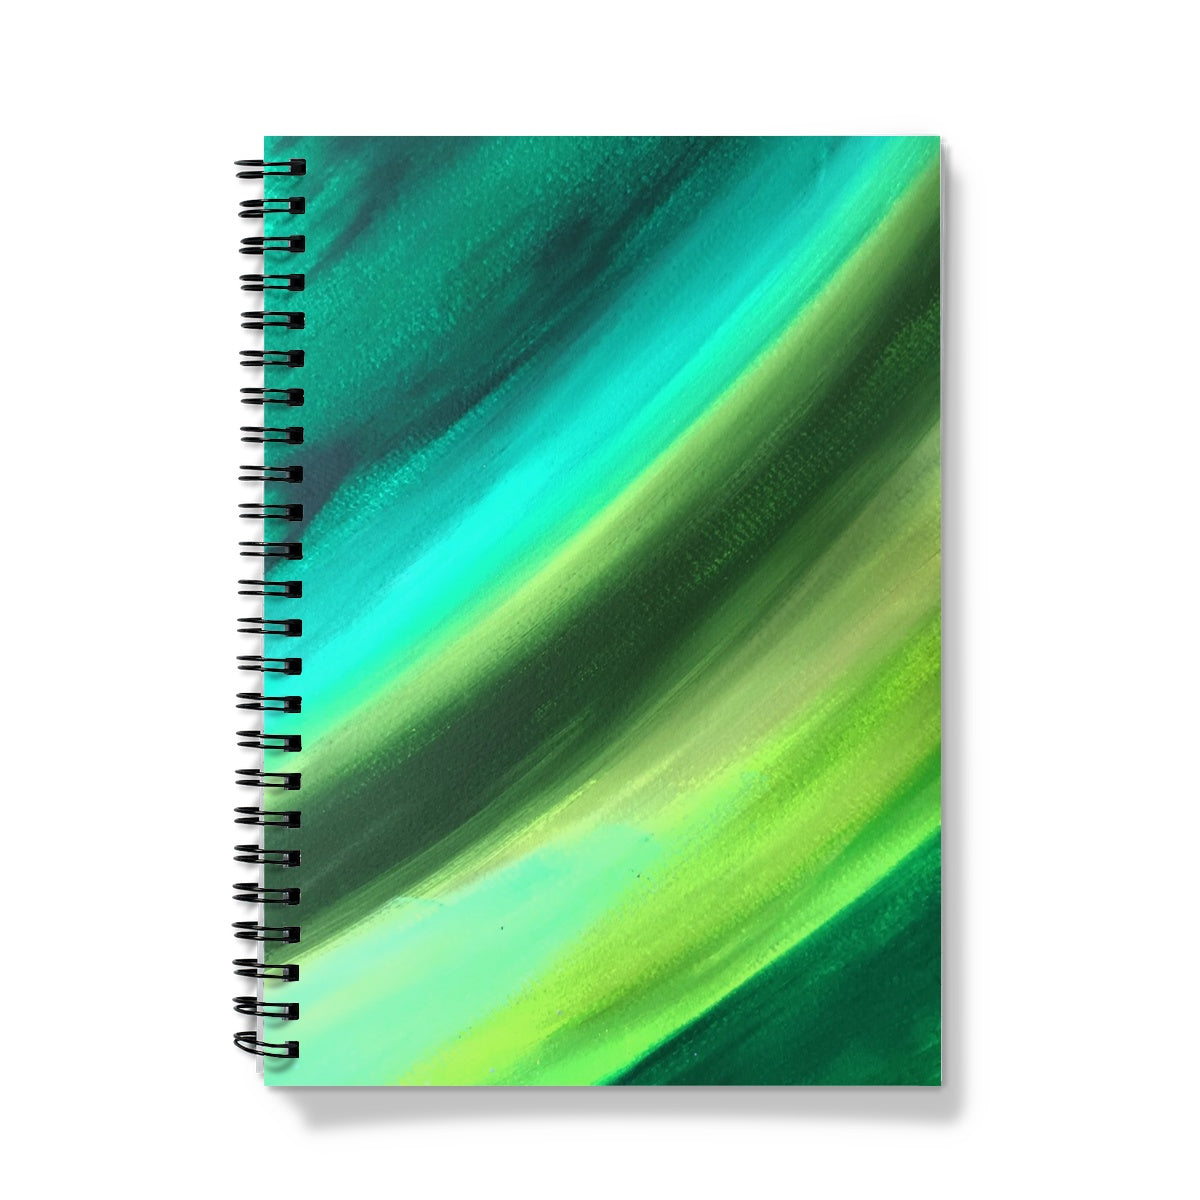 Green Notebook